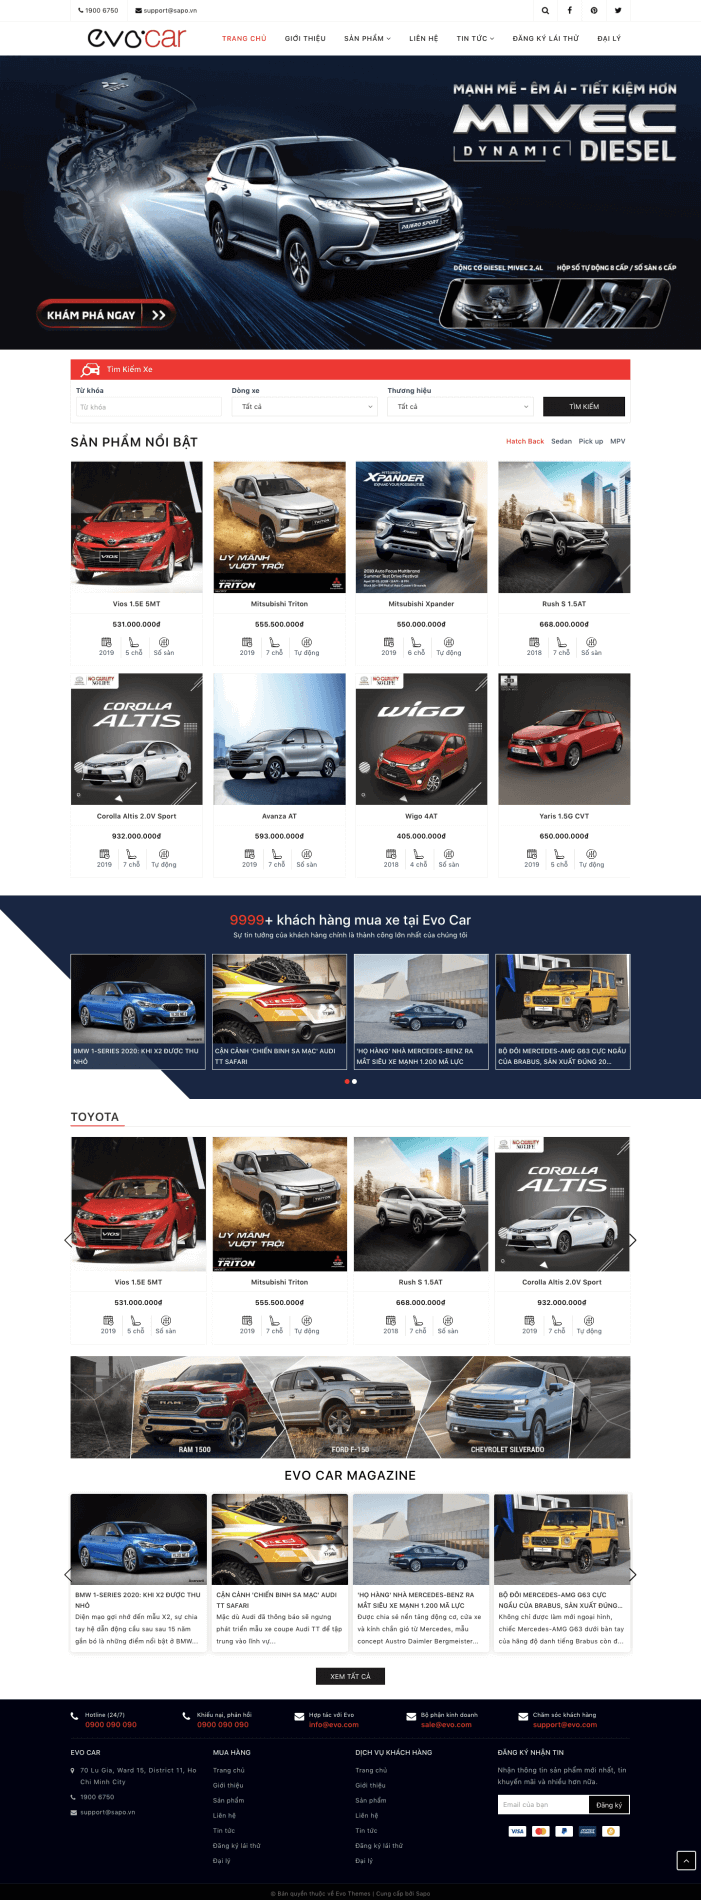 Giao diện website bán hàng Ô tô, xe máy Evo Car 5